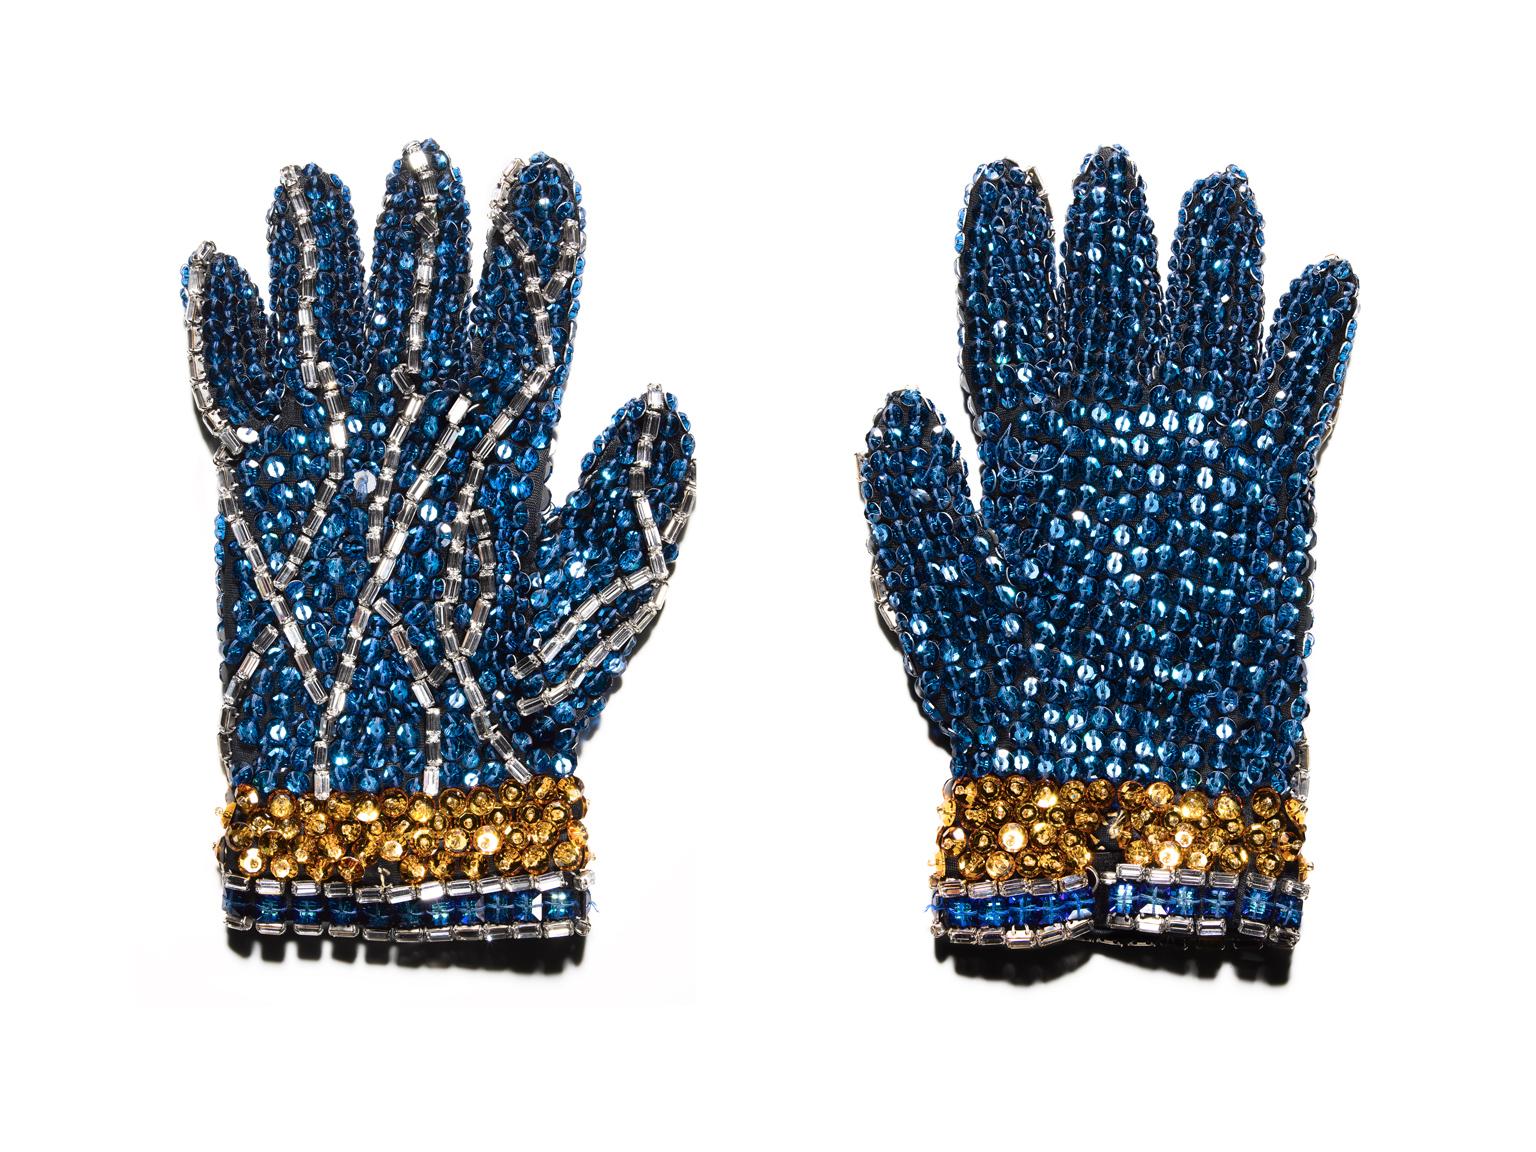 eine sehr detaillierte Stilllebenfotografie des ikonischen blau-goldenen Pailletten- und Strasshandschuhs der Künstlerin

Blauer Handschuh ( Michael Jackson ) von Tom Schierlitz
64 x 48 Zoll (163 x 122cm)
signierte Auflage von 7 Stück

40 x 30 Zoll 